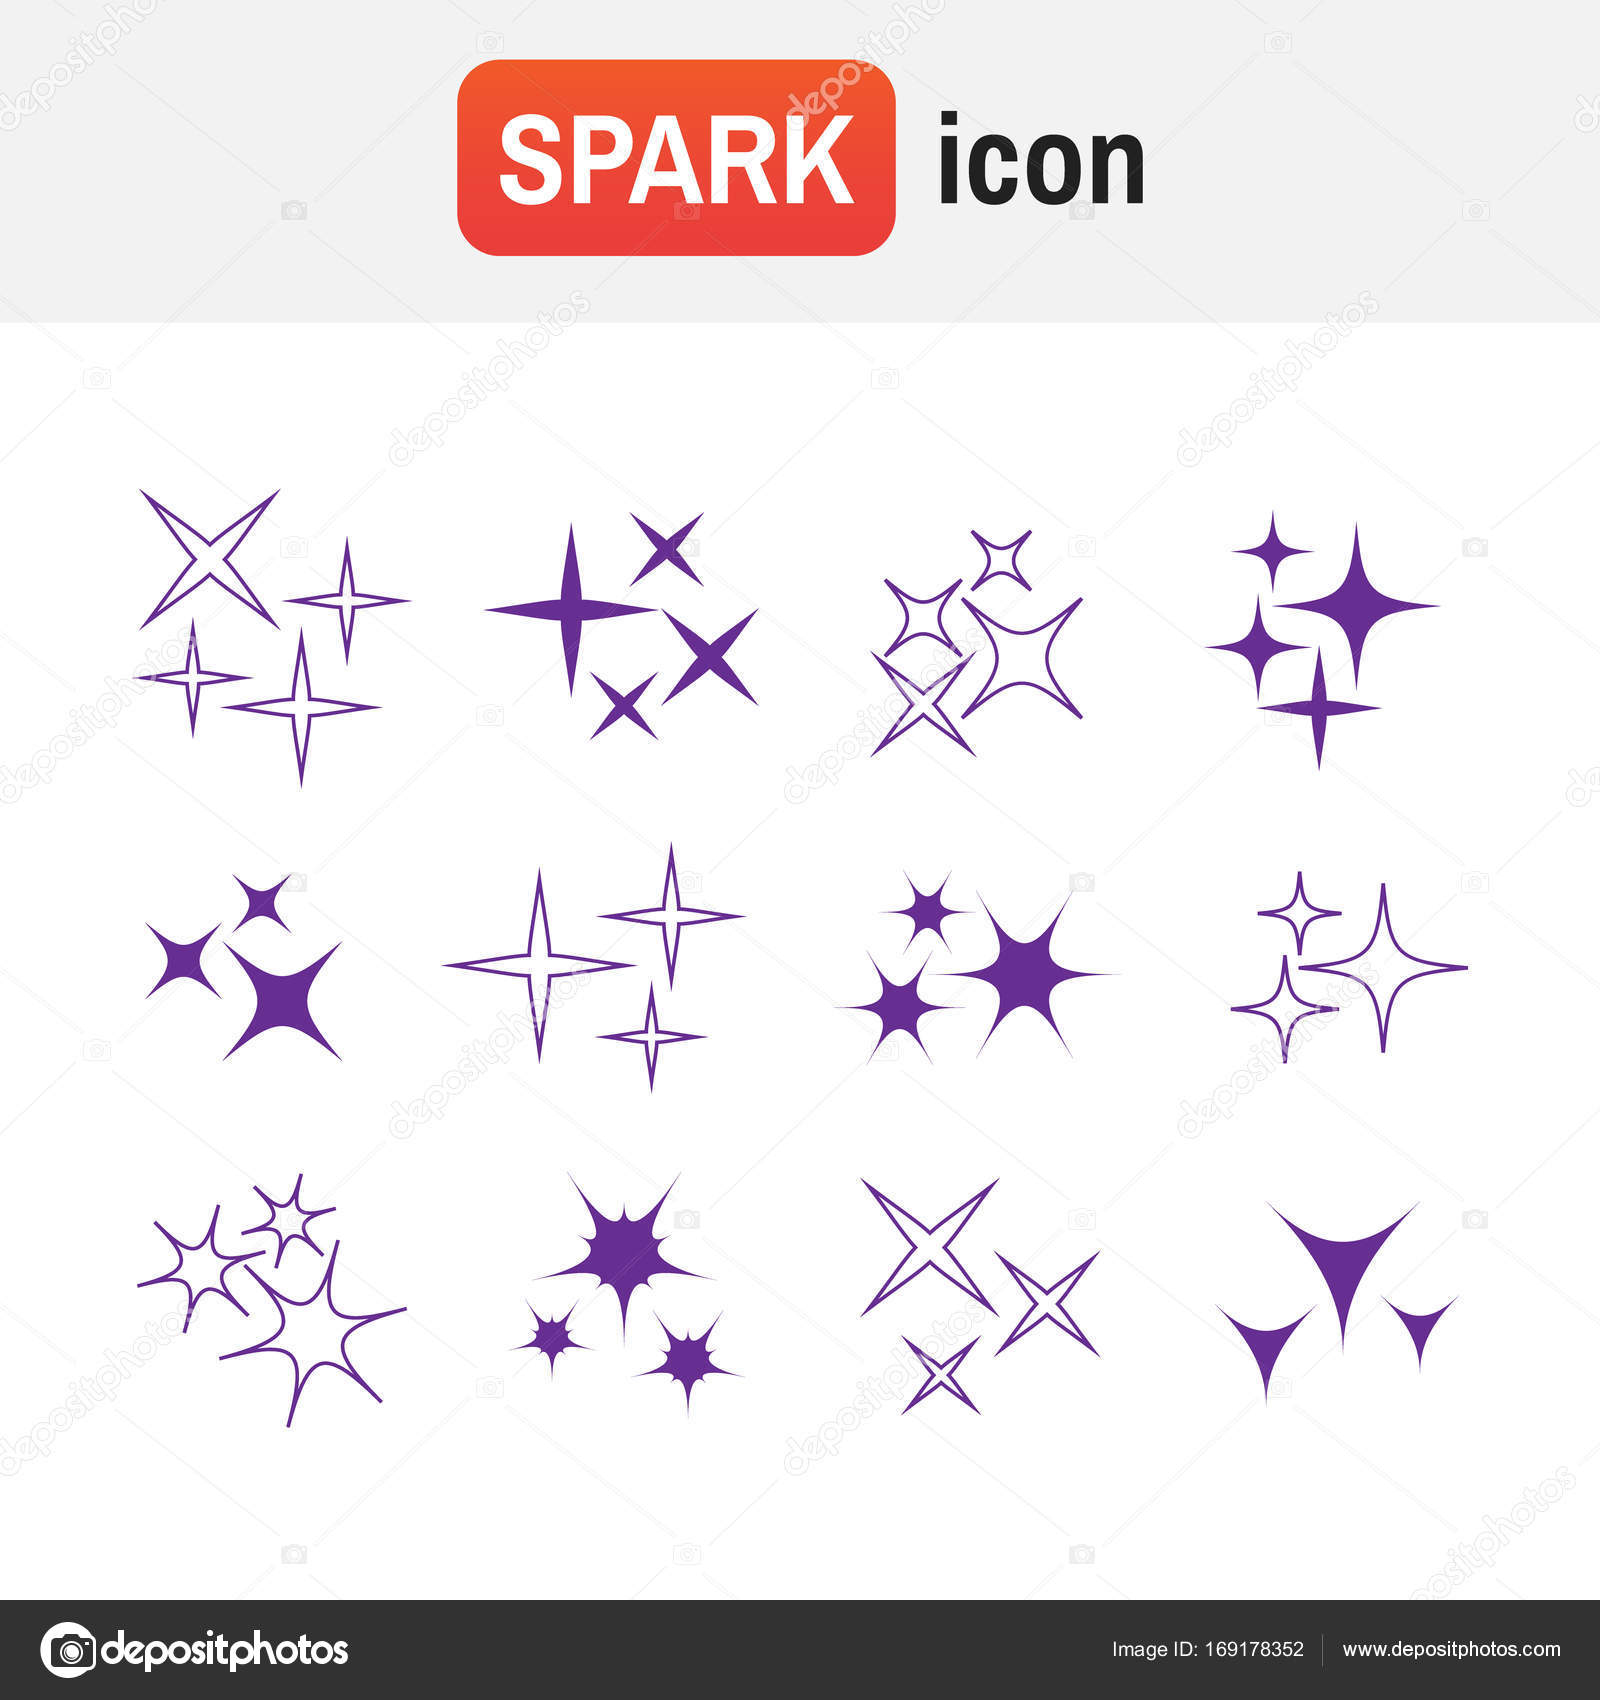 Shine icons | Noun Project